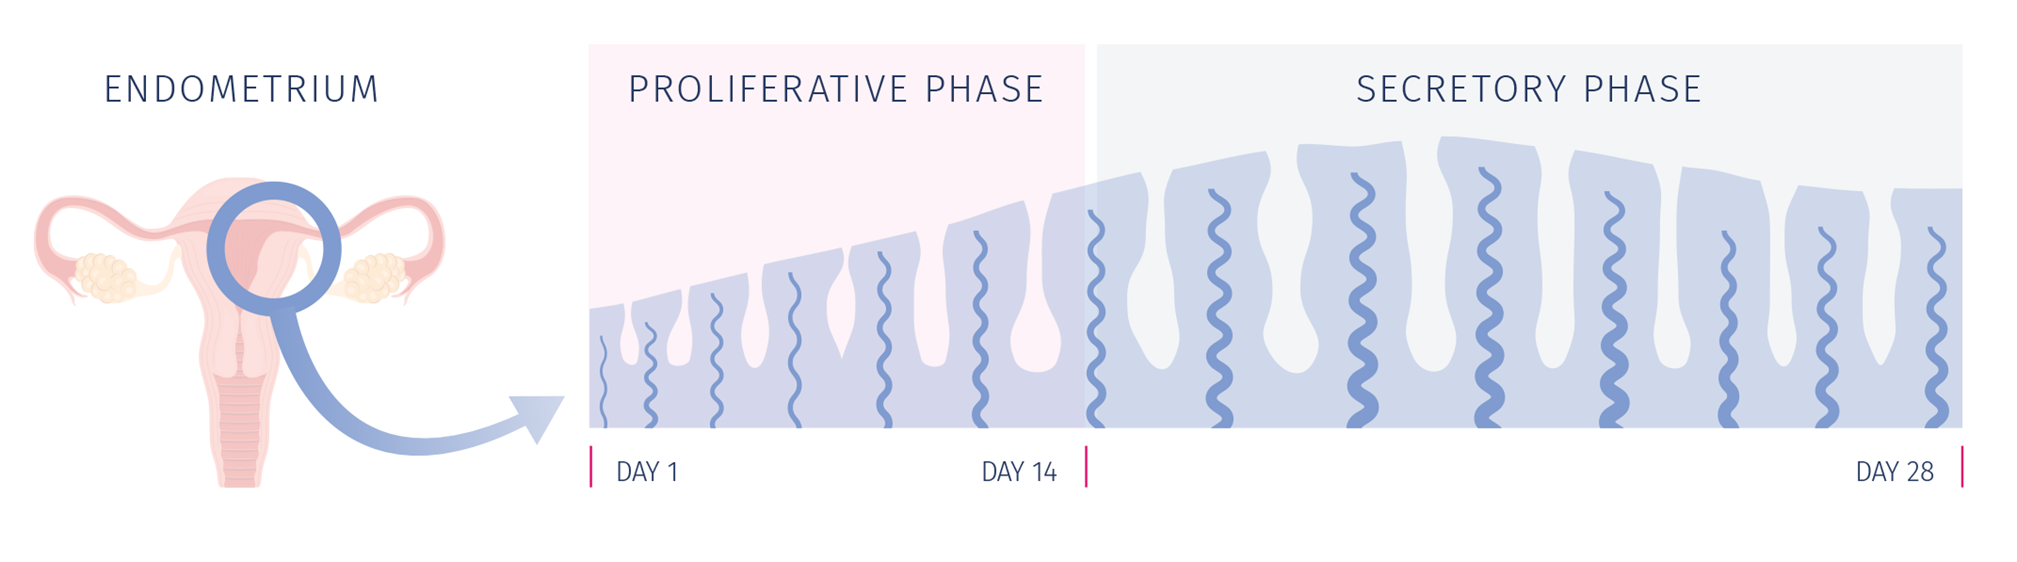 endometrium phases